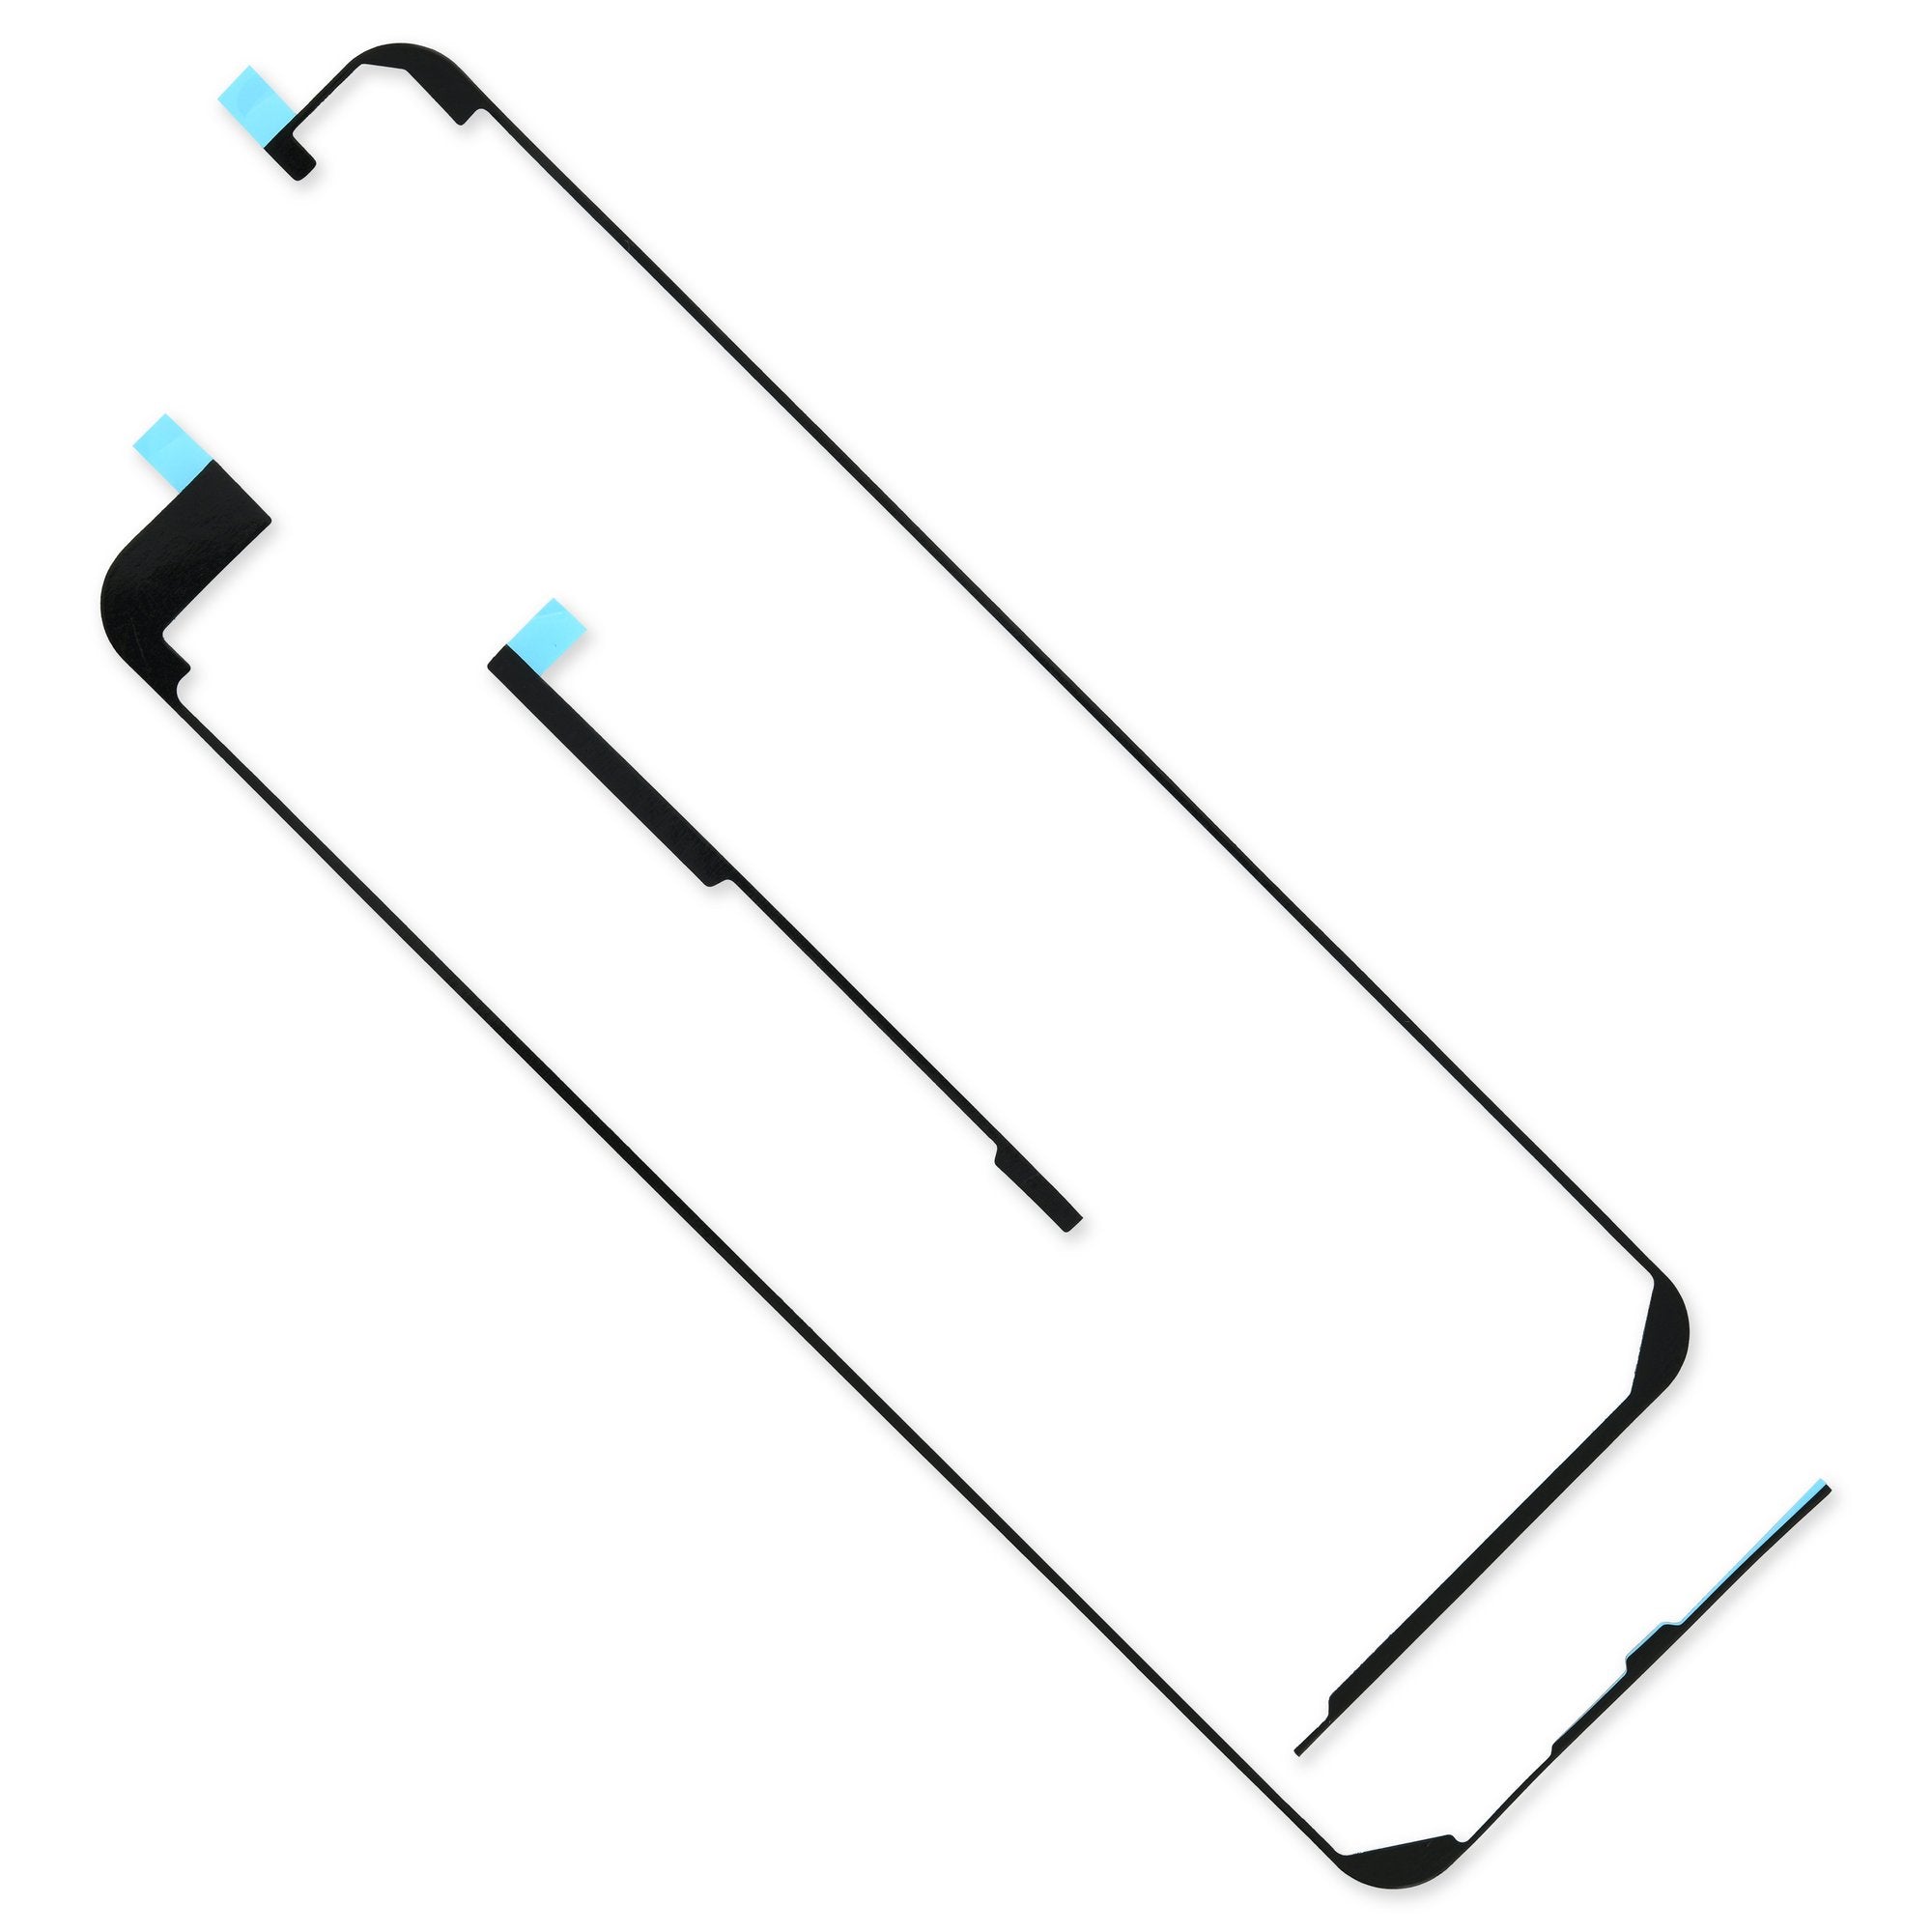 iPad mini 5 Adhesive Strips